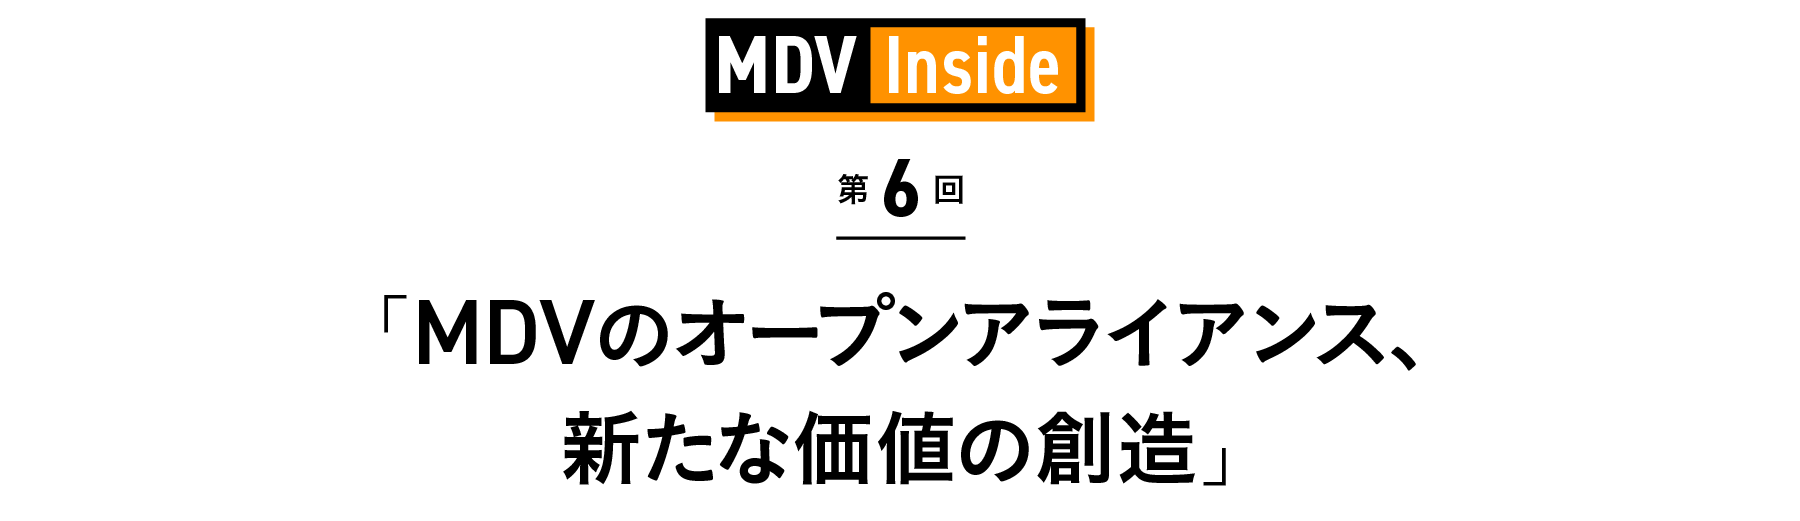 「MDVのオープンアライアンス、新たな価値の創造」 MDV Inside 第6回